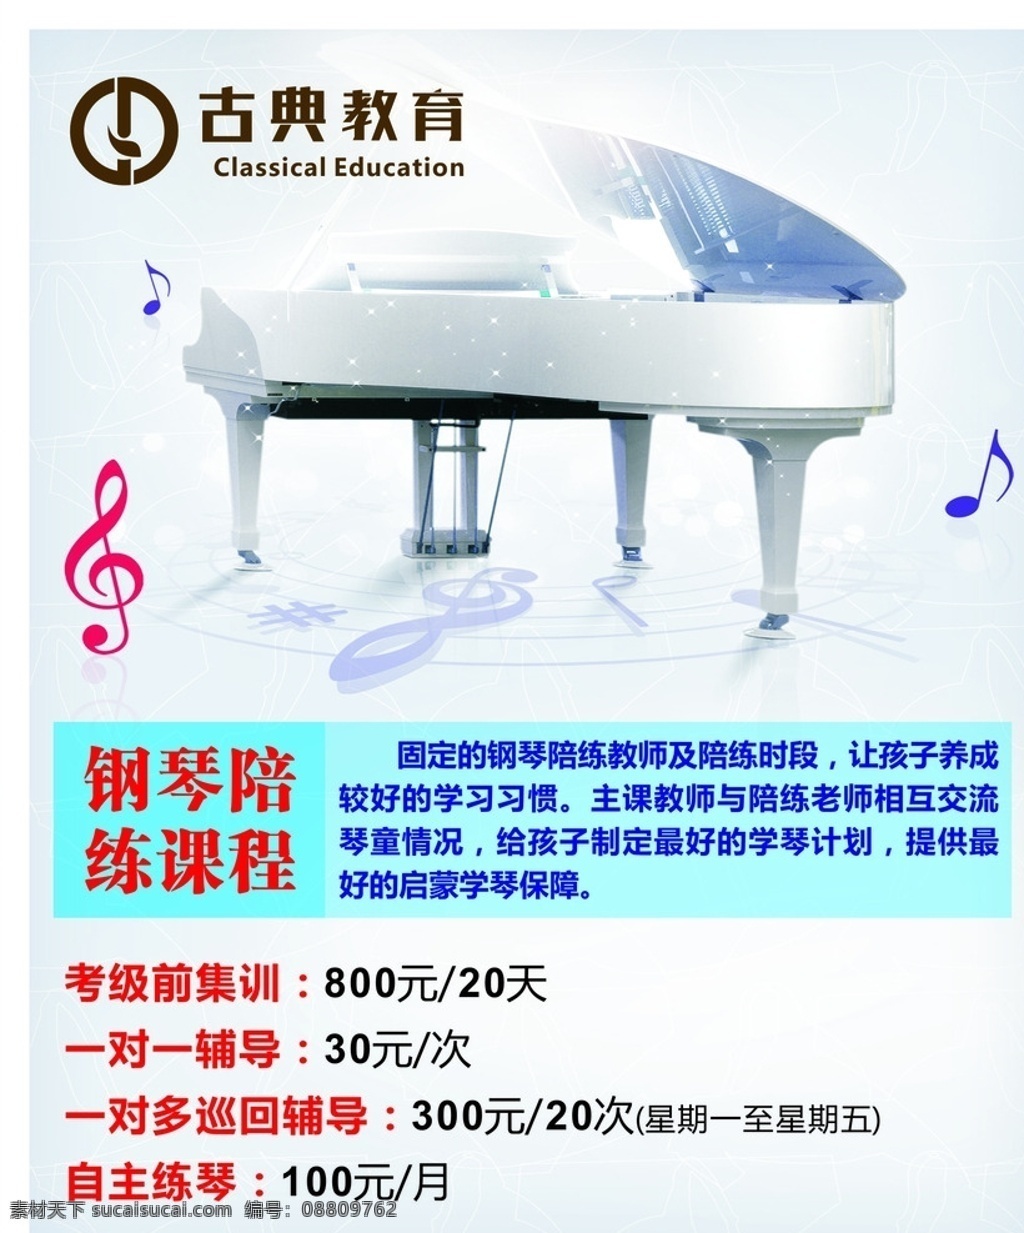 教育海报 钢琴海报 钢琴课程 教育课程 一对一 钢琴陪练 白色钢琴 音乐 钢琴 白色海报 培训价格 教育价格 艺术教育